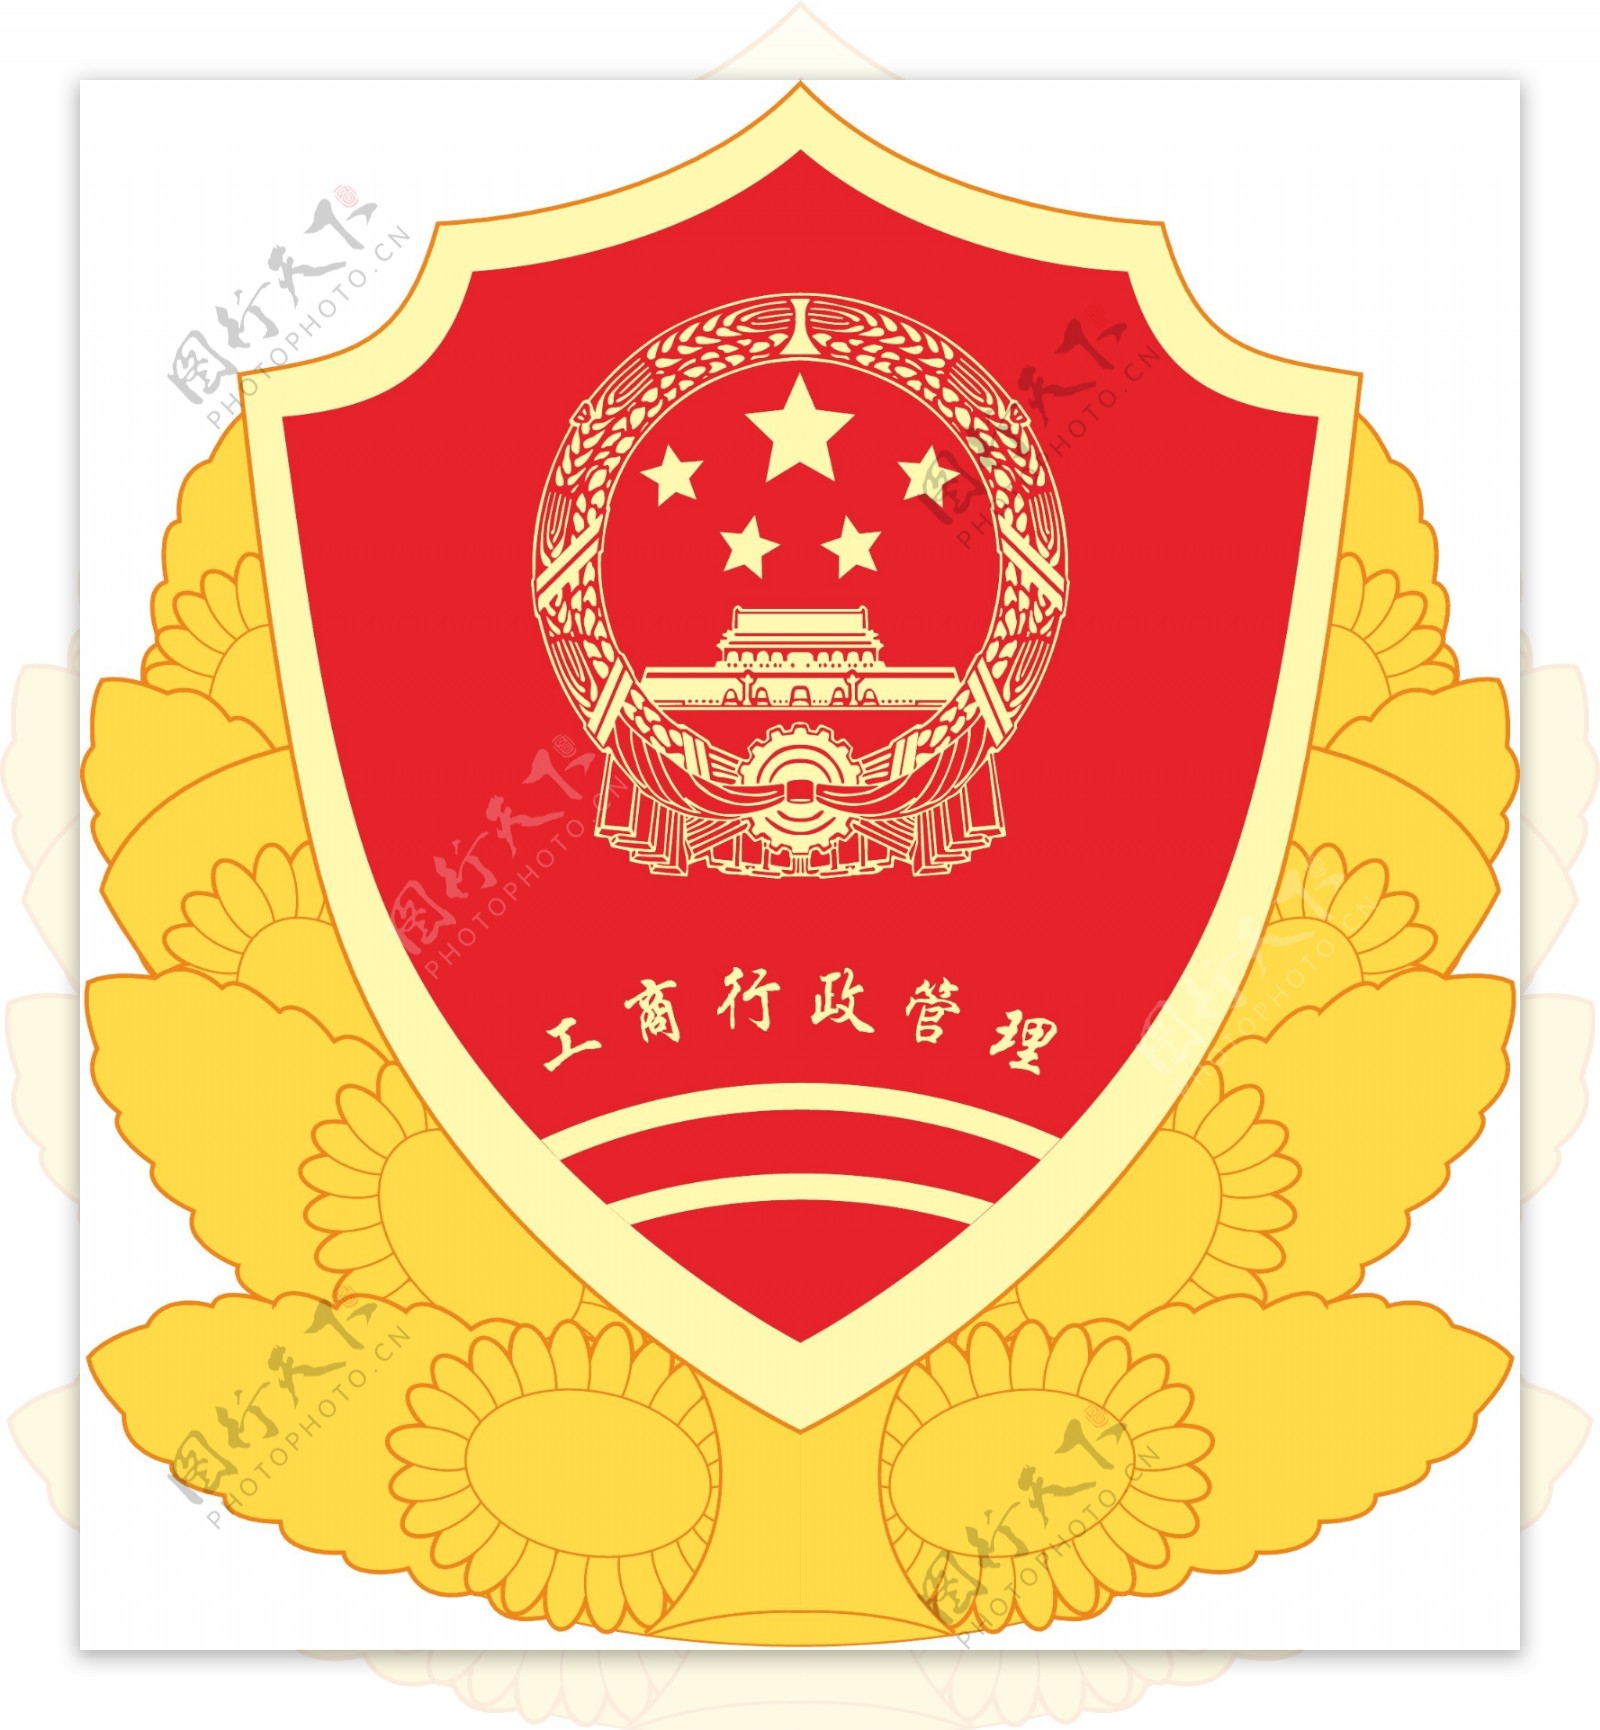 工商管理局徵标红盾徽简洁稿图片